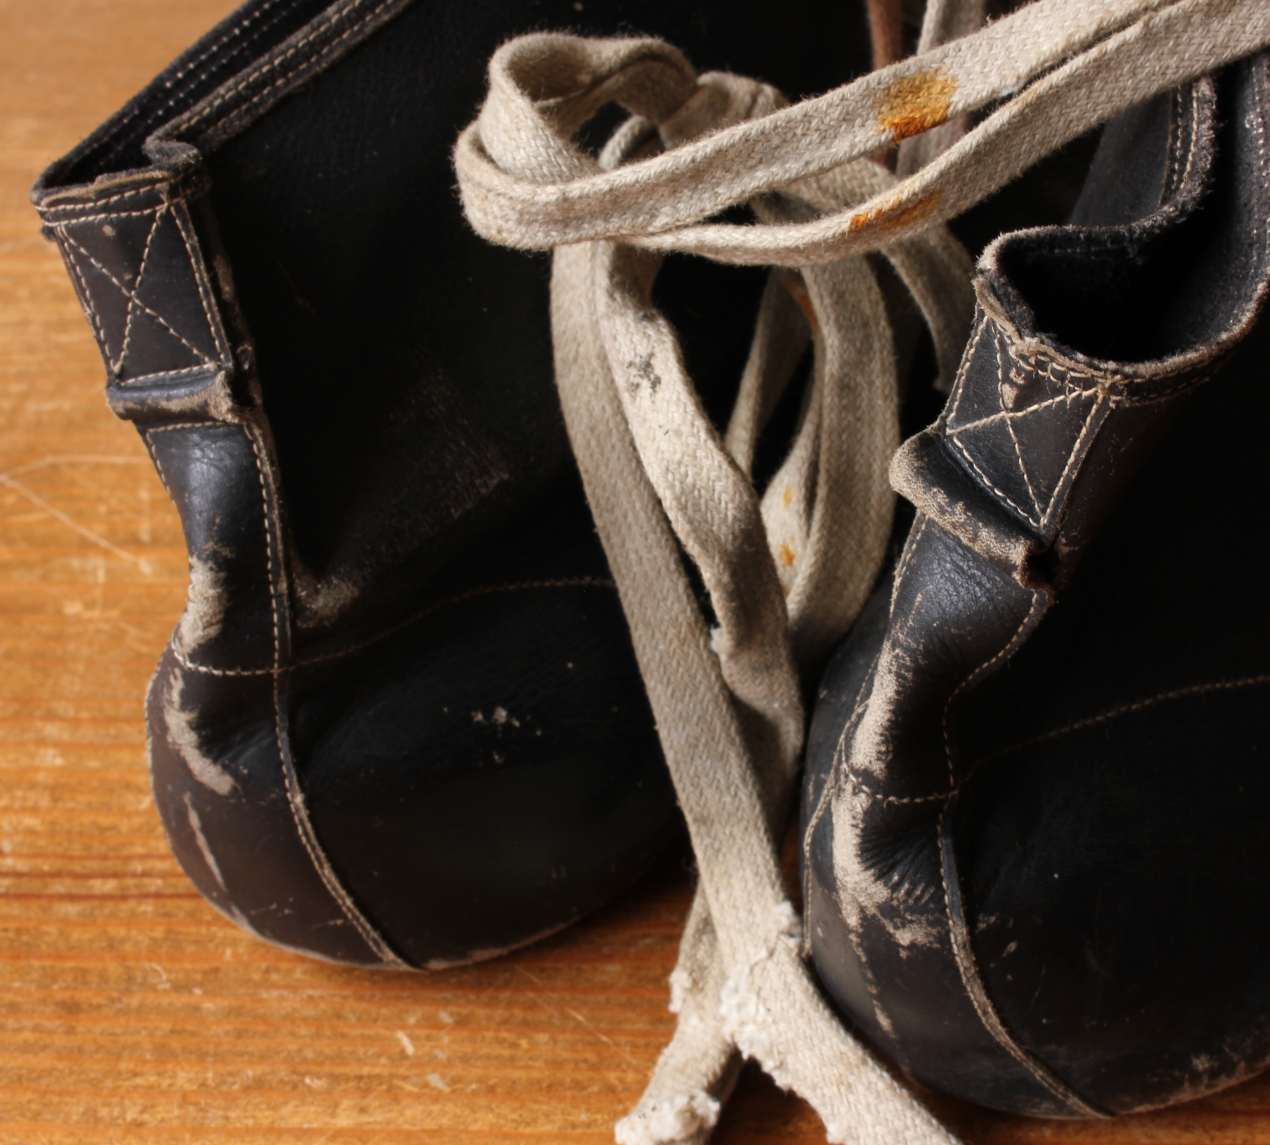 Vintage Black Leather Boxing Boots. Antique Shoes. c1930. Mancave, Gym.